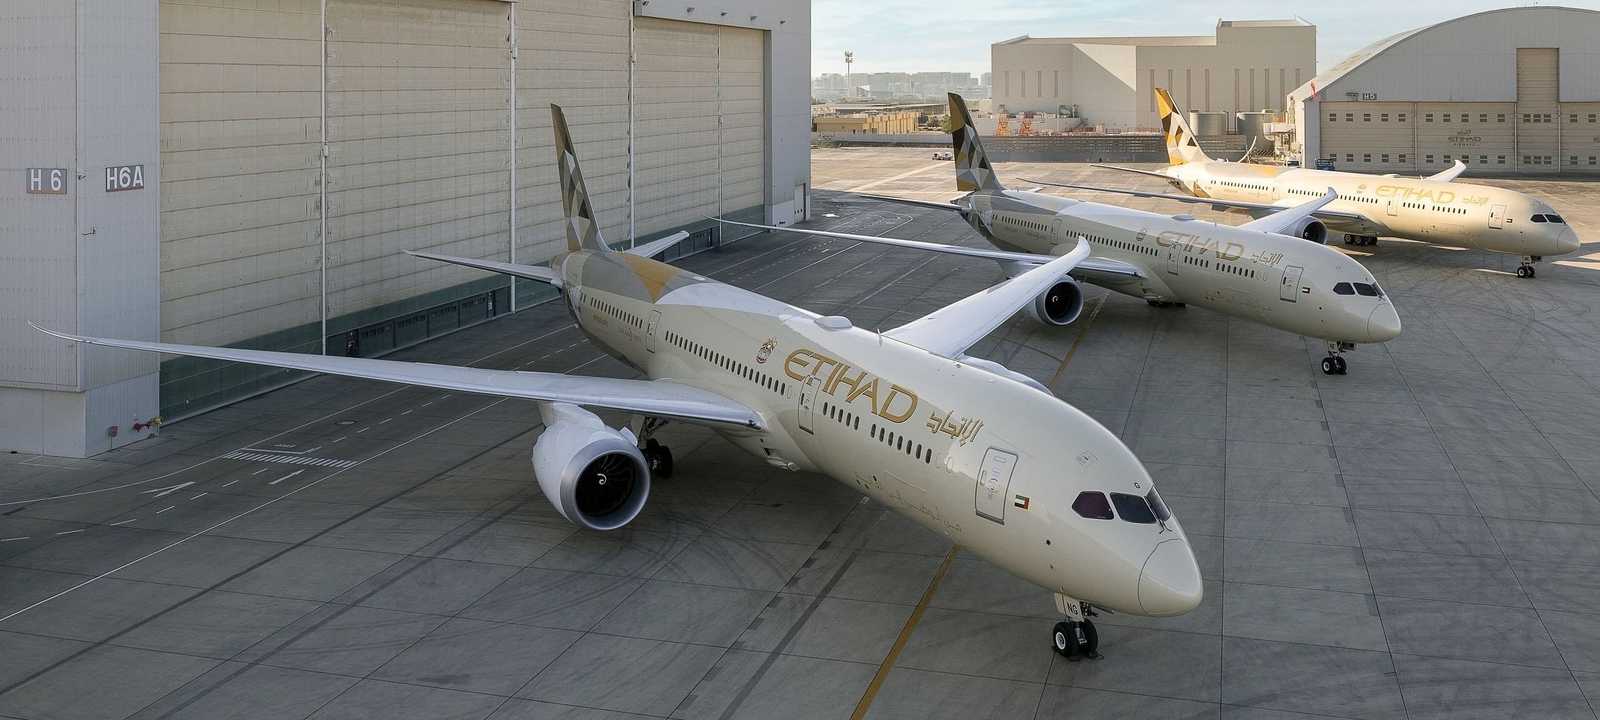 طائرات جديدة تنضم لأسطول "الاتحاد للطيران"